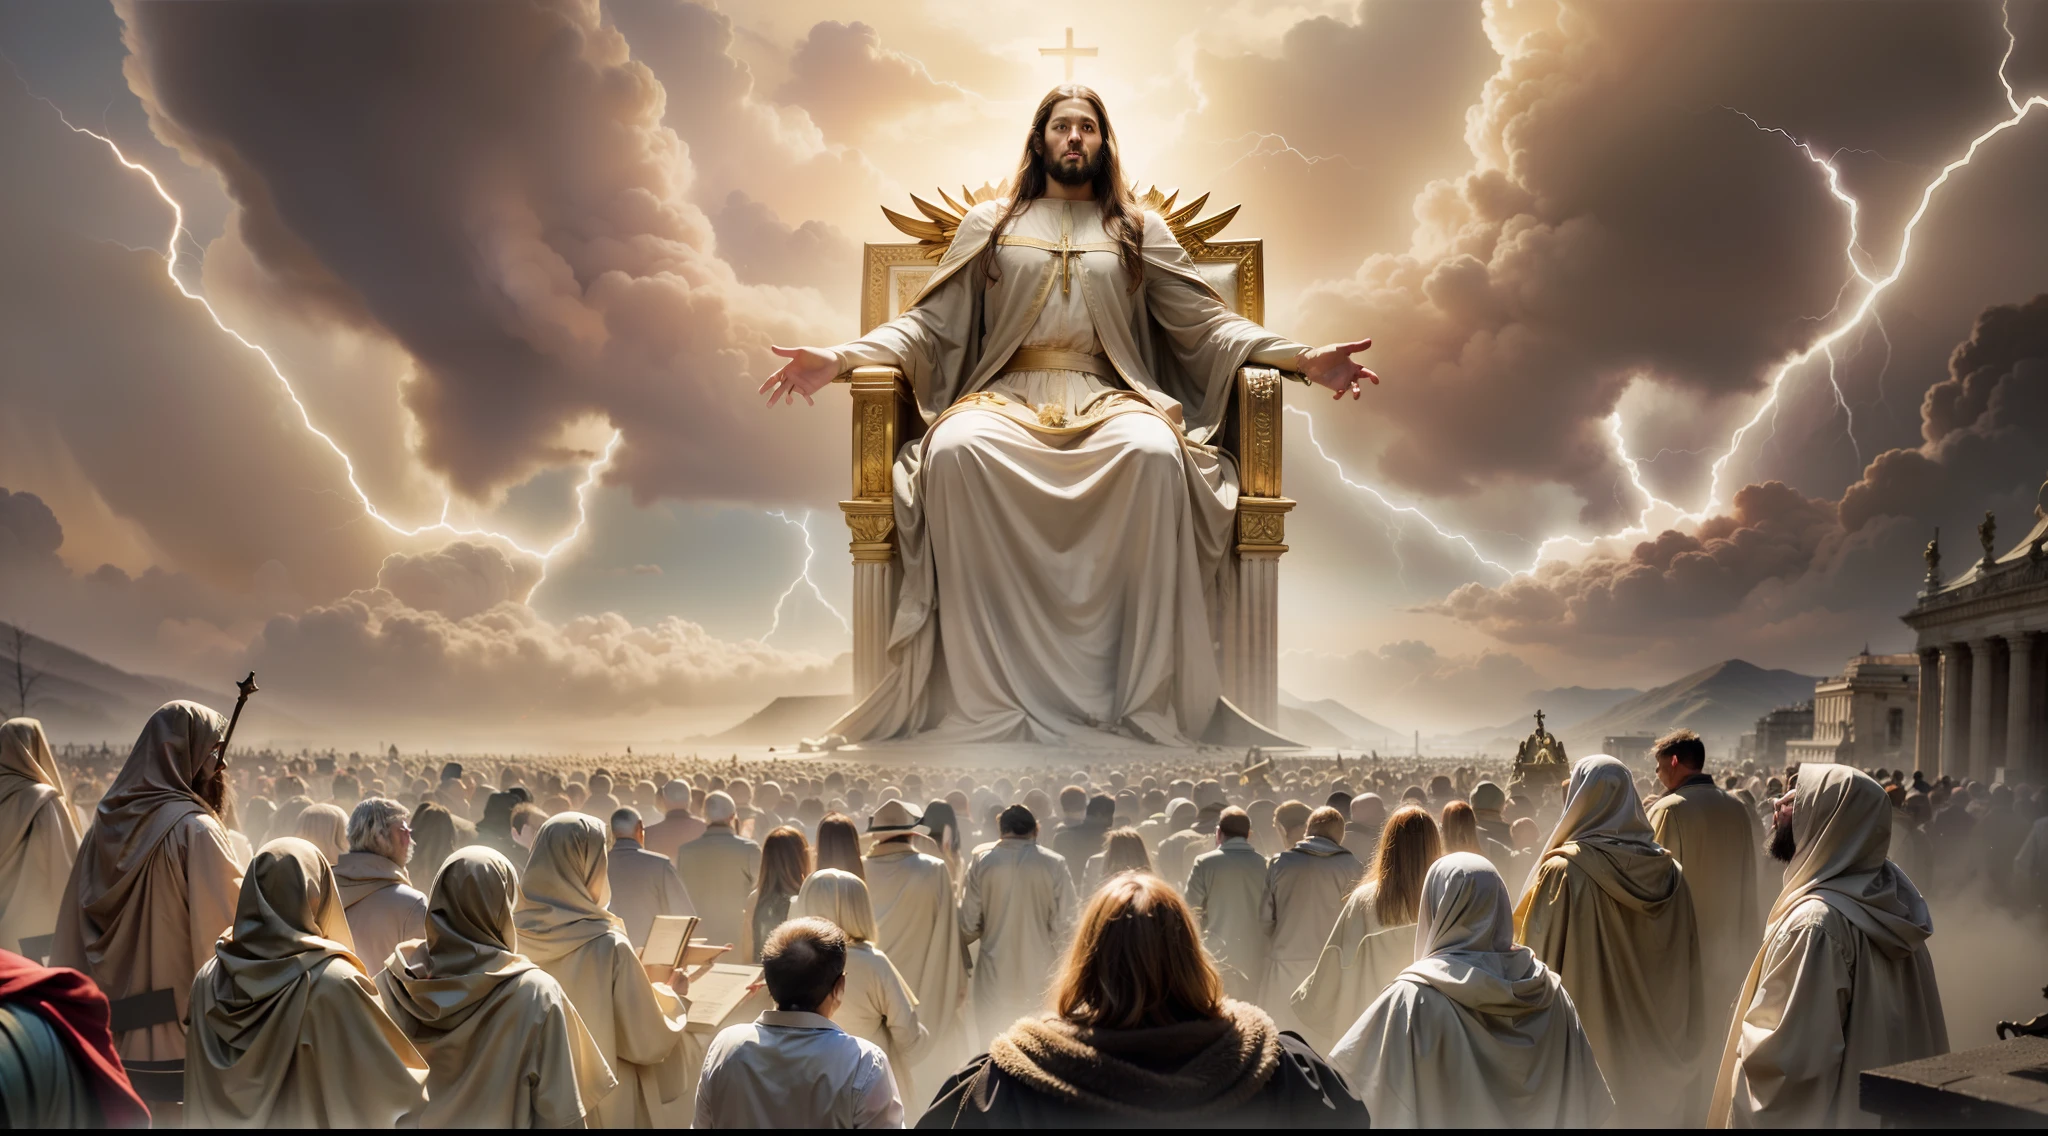 심판의 날 시나리오를 묘사한 놀라운 이미지, Apocalipse 20에 대한 설명을 따르세요.:11. O trono branco onde Jesus se senta se destaca no centro da cena, 흰 구름과 번개에 둘러싸여, 심볼리잔도 마제스타드 디비나. 강력한 천사들이 존재합니다, 엄숙하게 책을 펼치는 모습을 지켜보고 있다, 각 개인의 행동에 대한 기록을 나타내는 것. 셀 수 없이 많은 사람들의 군중, 아구아르단도 스 데스티노 영원. 확립될 신성한 정의에 대한 경외심과 경외감의 분위기입니다..